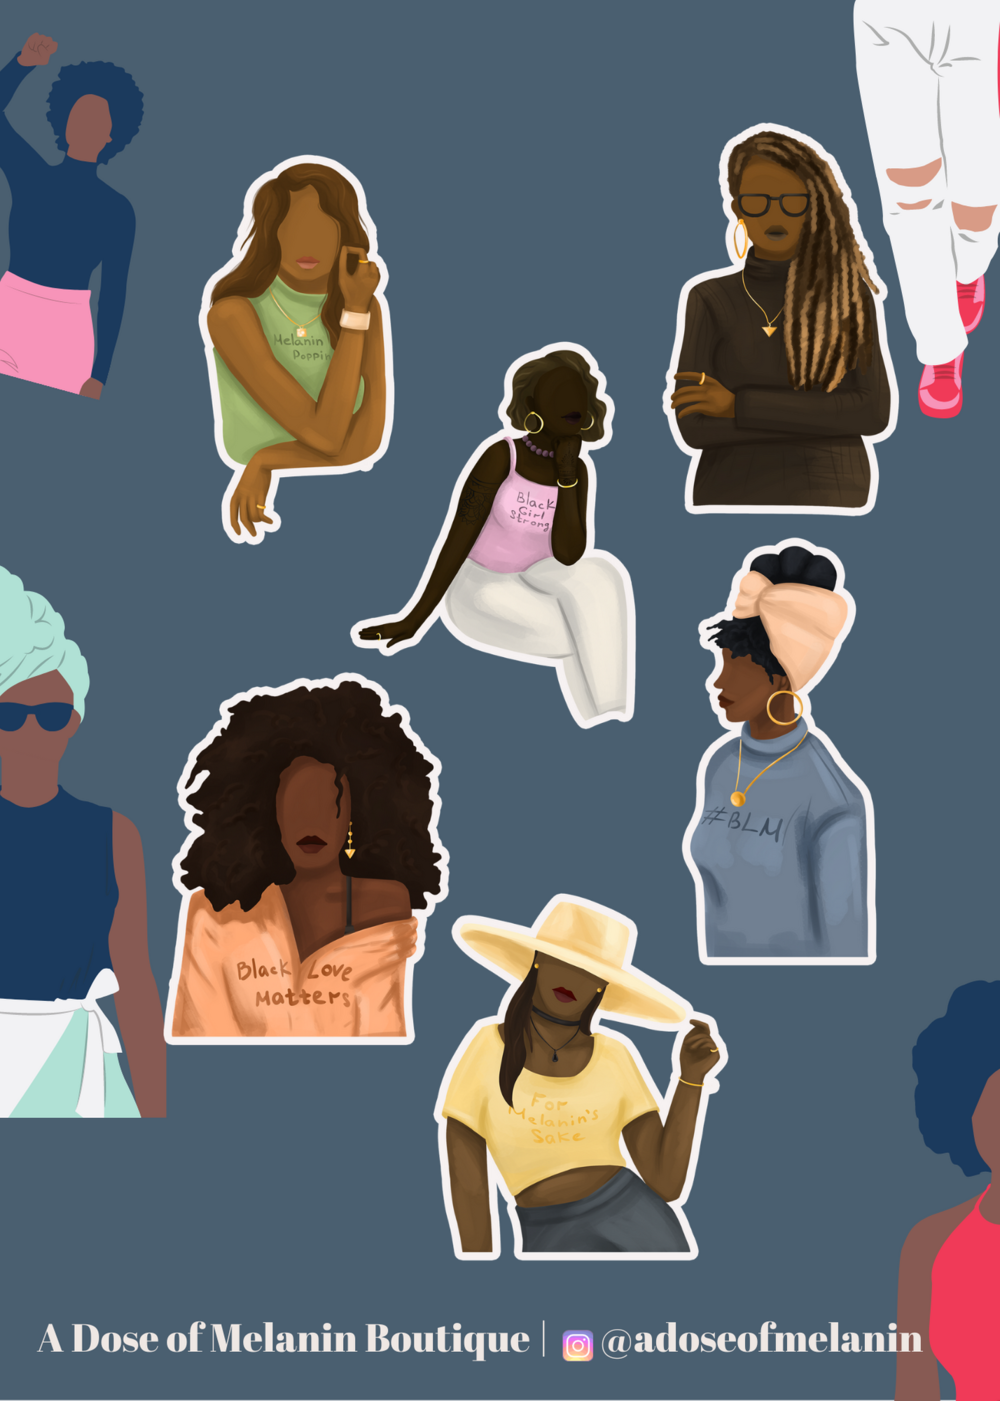 Black Girl Strong Sticker Kit